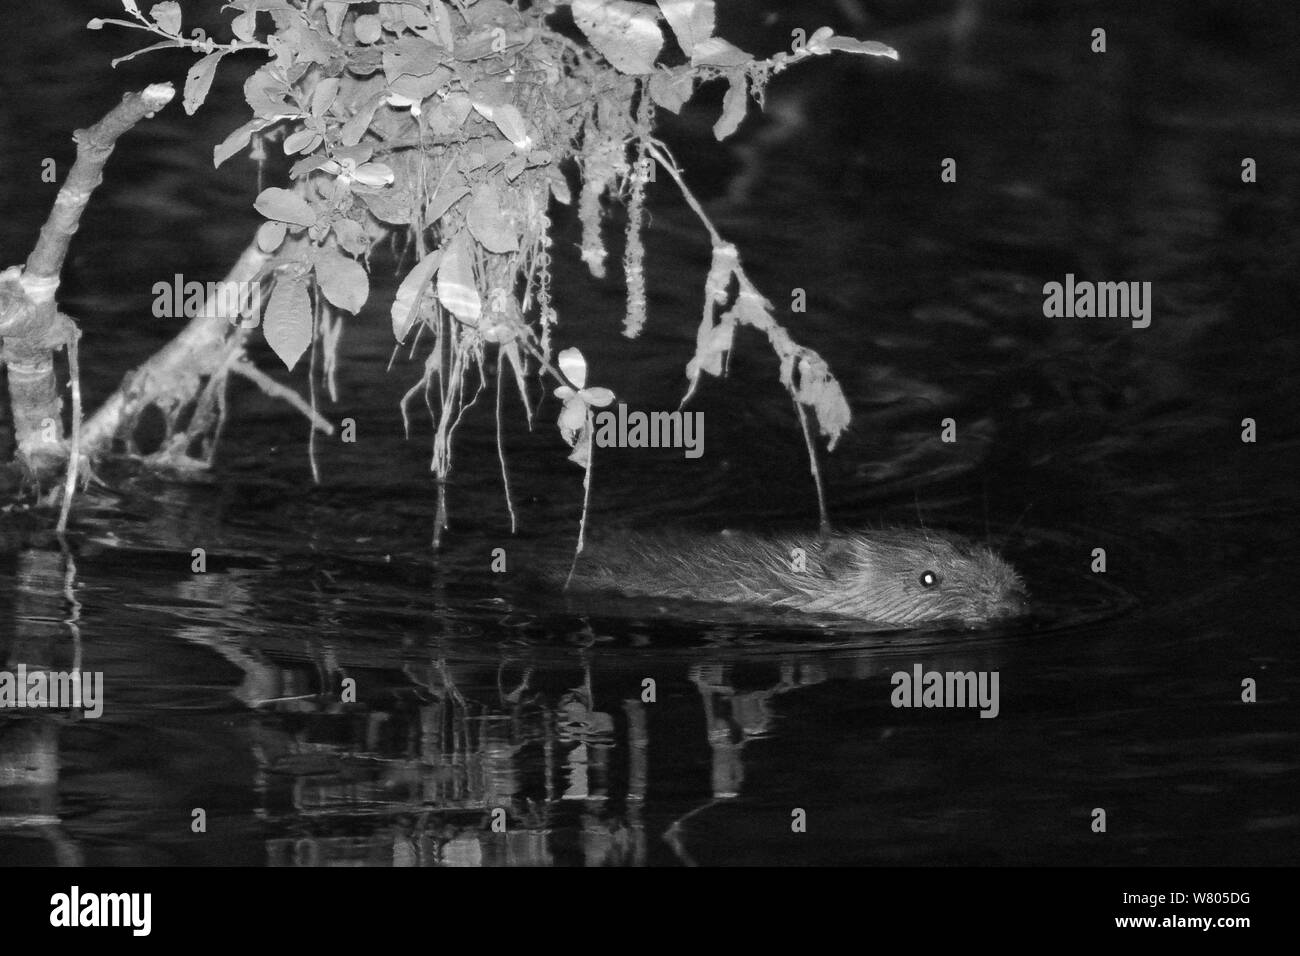 Eurasienne jeune castor (Castor fiber) kit piscine la nuit. Kit sauvage né à la Loutre de rivière, au cours de procès, Castor Devon géré par le Devon Wildlife Trust. Devon, Royaume-Uni, août 2015. Photographié à l'aide de caméra à infrarouge. Banque D'Images